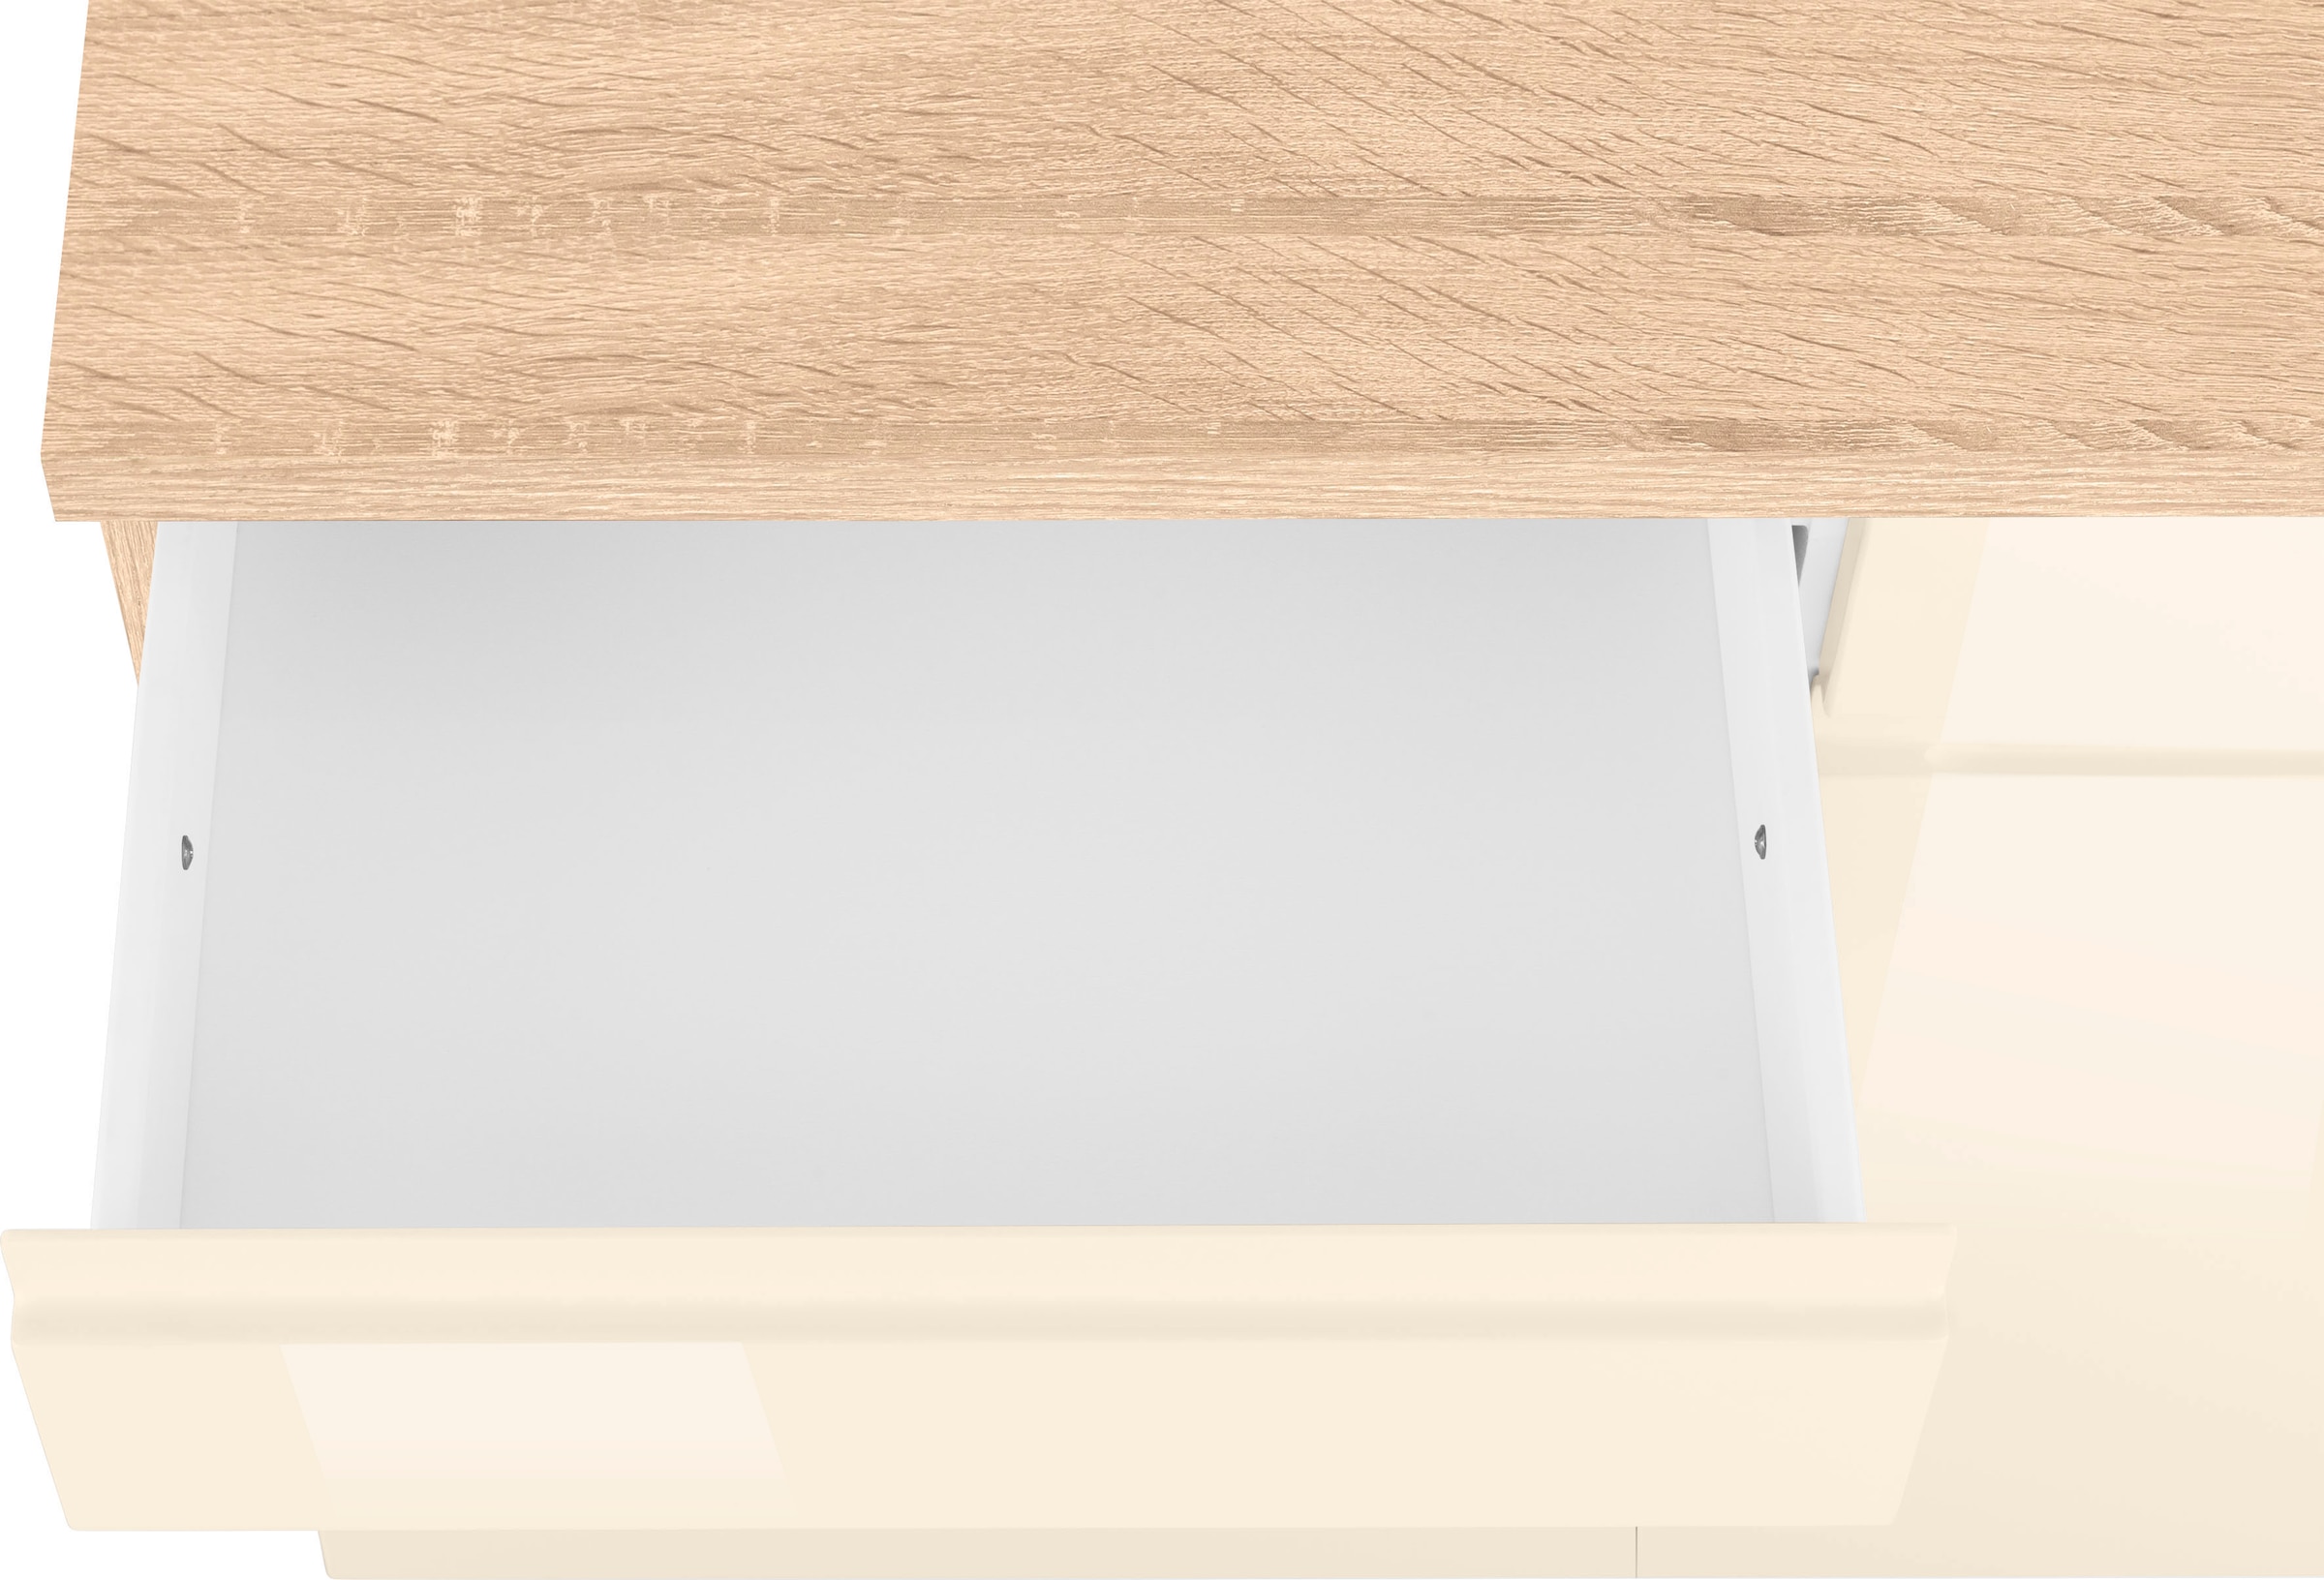 HELD MÖBEL Unterschrank »Virginia«, 85 cm hoch, 150 cm breit, 3 Schubladen,  3 Türen, griffloses Design | BAUR